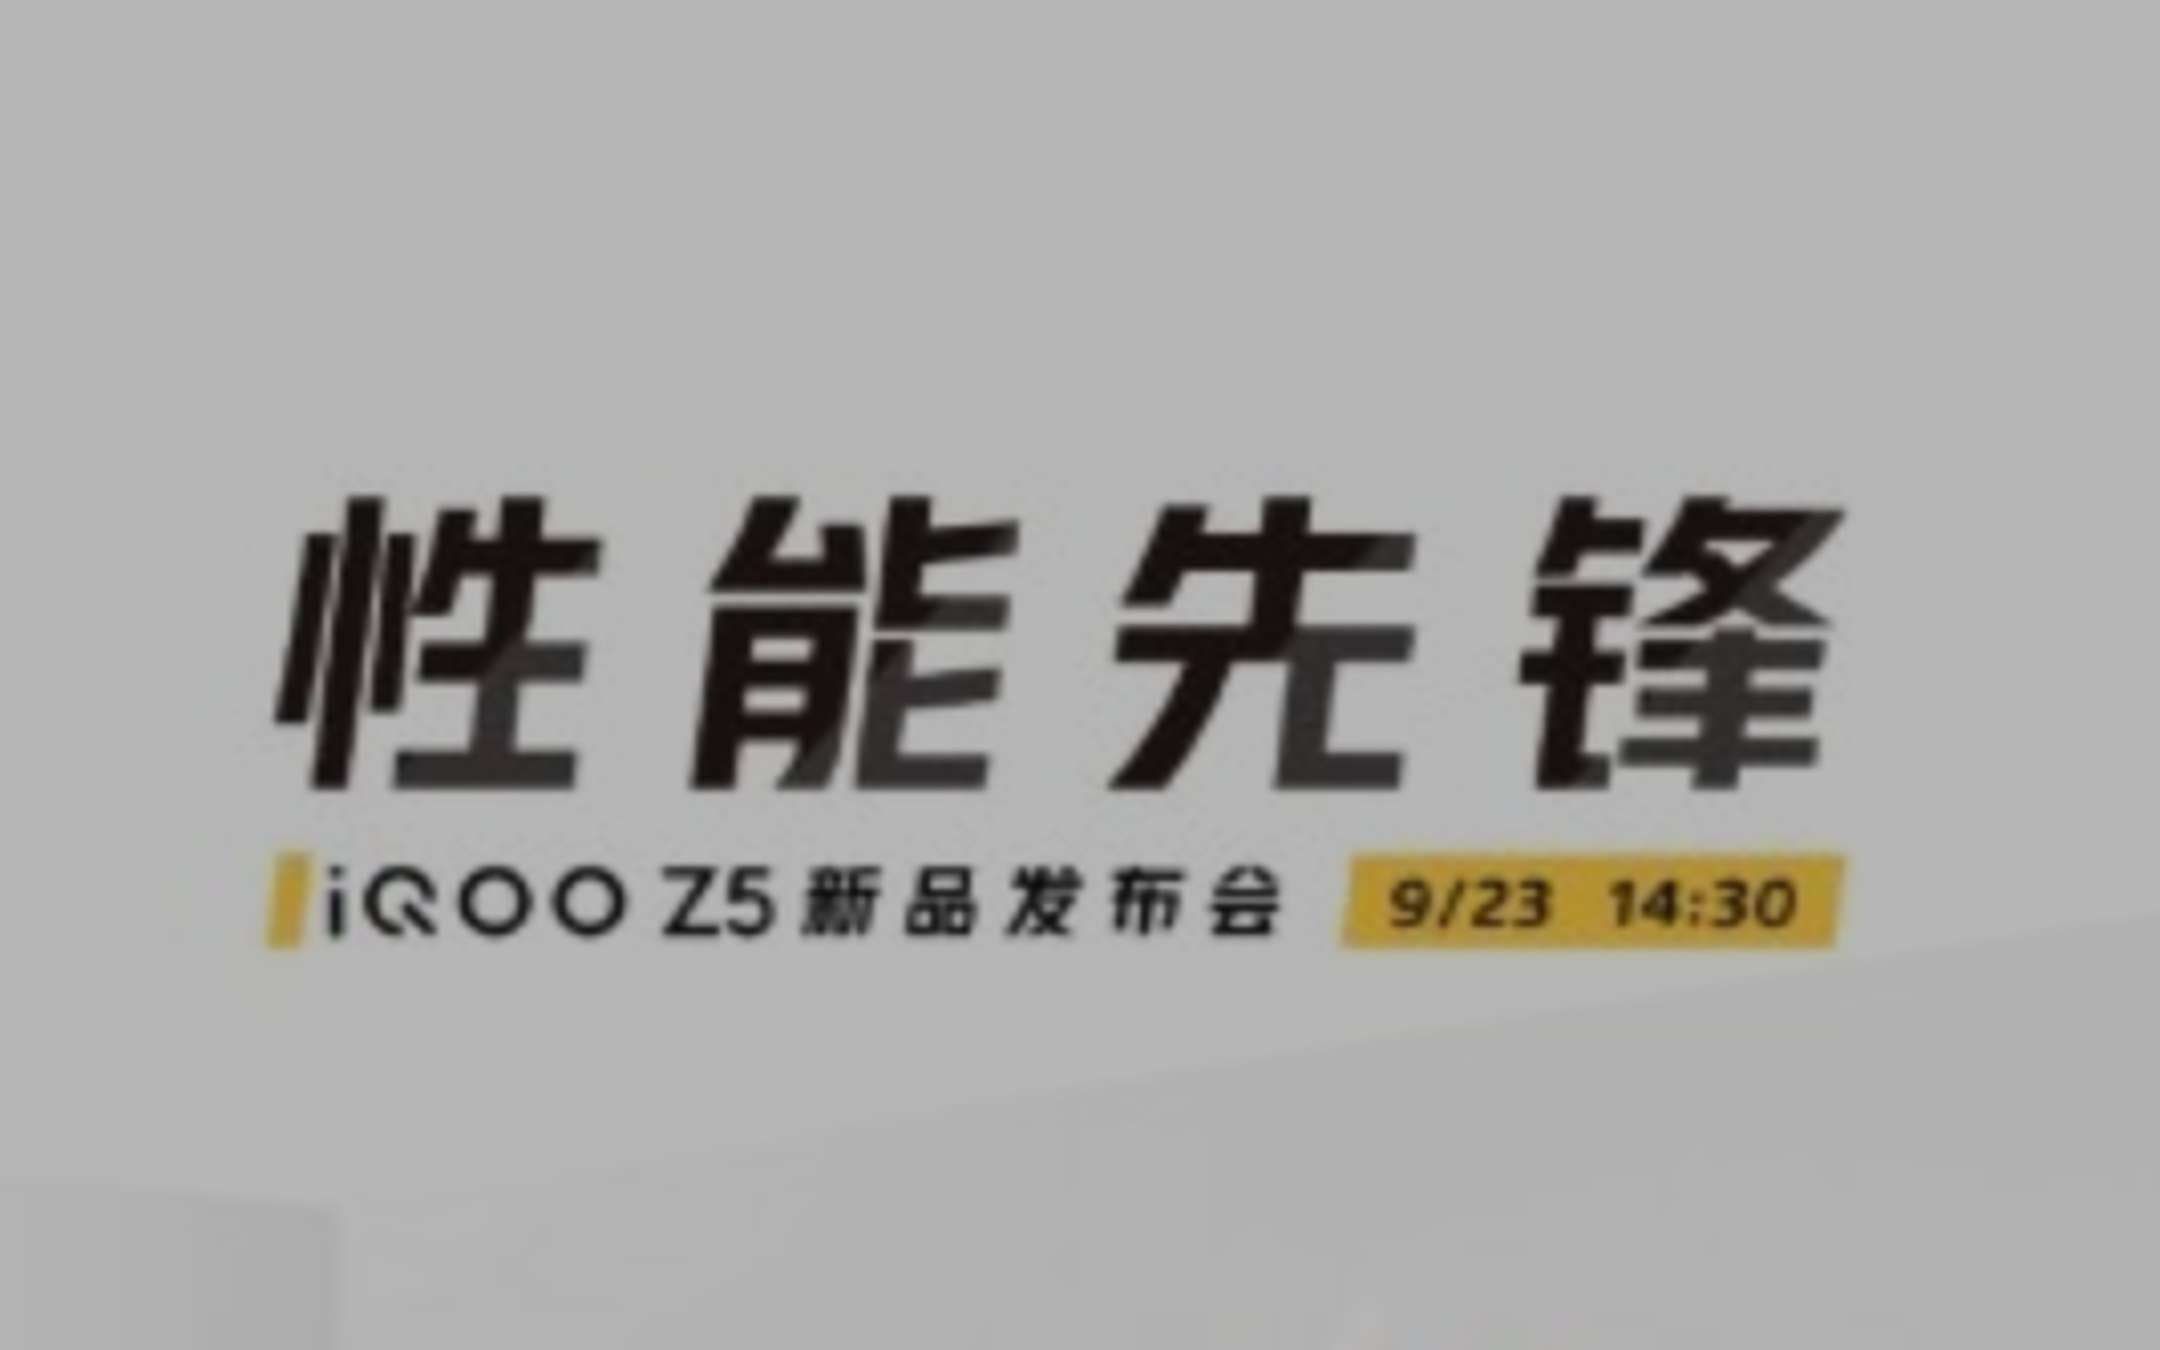 Vivo iQOO Z5: data di lancio e specifiche